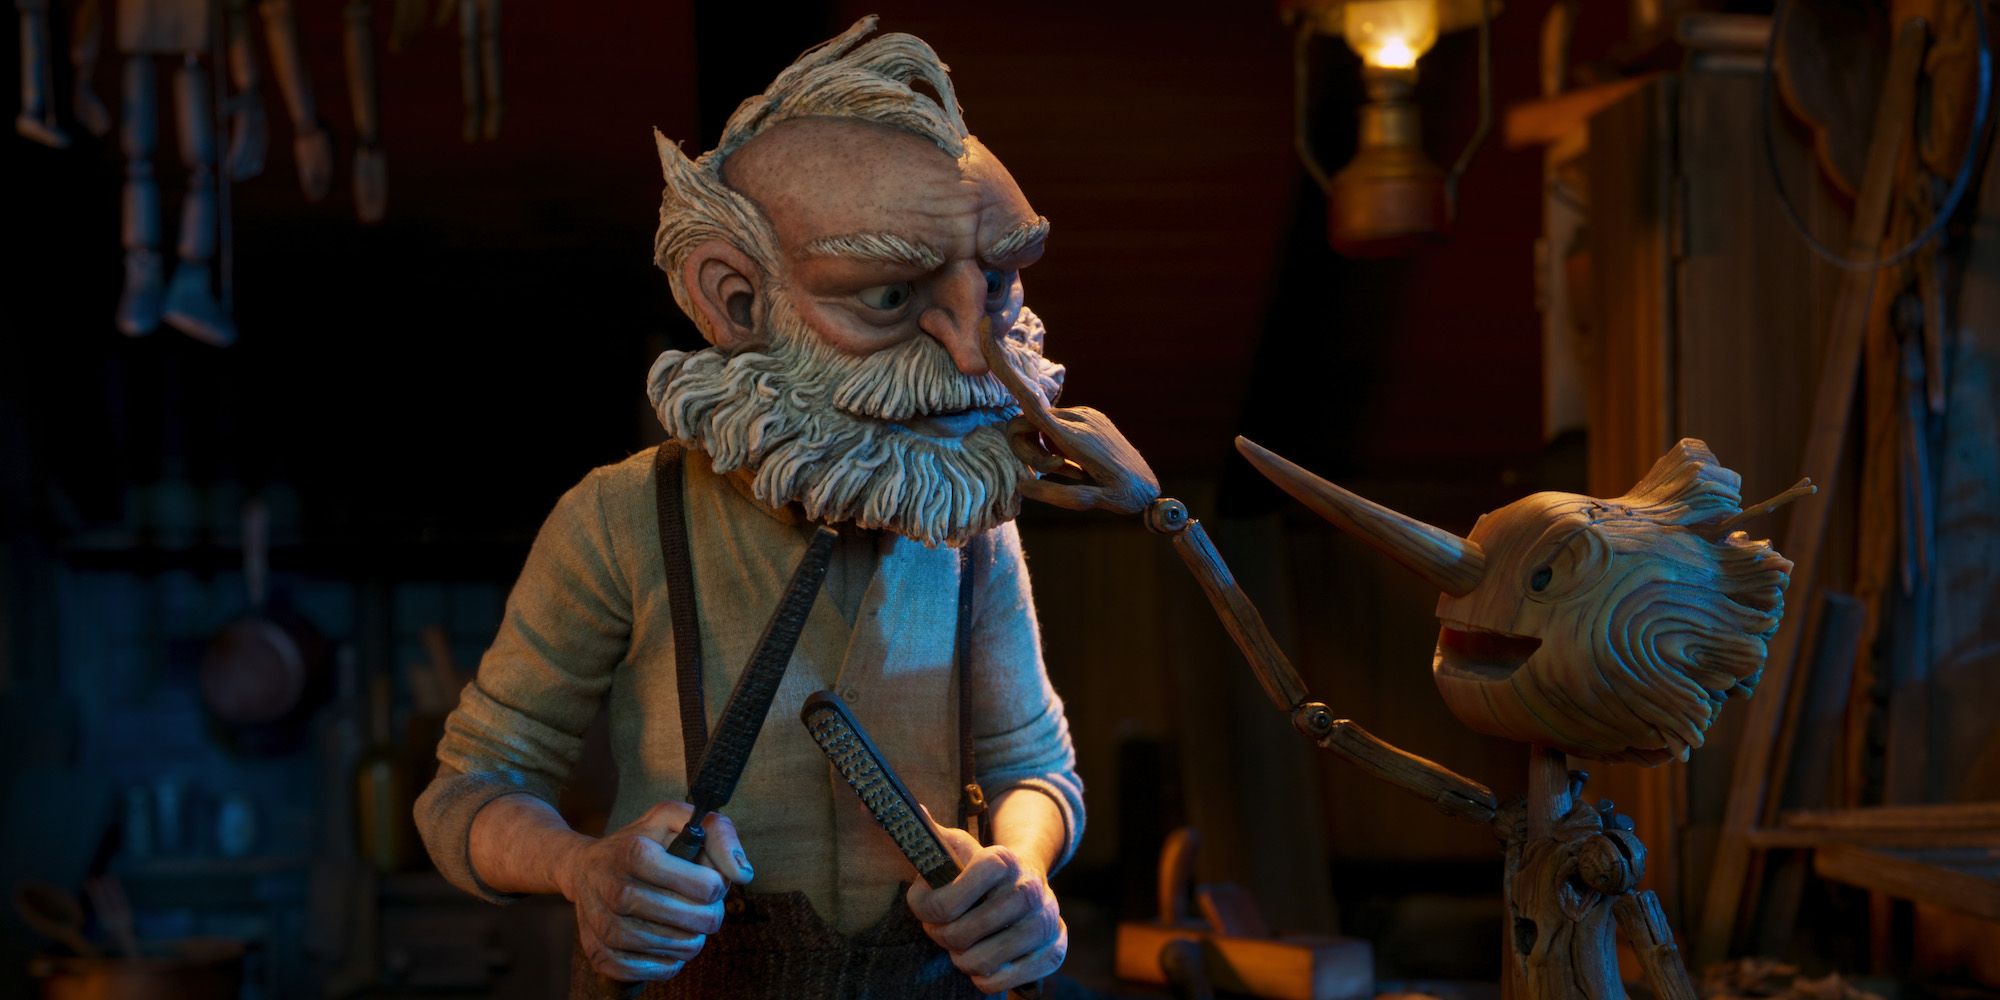 Pinocchio touching a man's beard in Netflix's Pinocchio